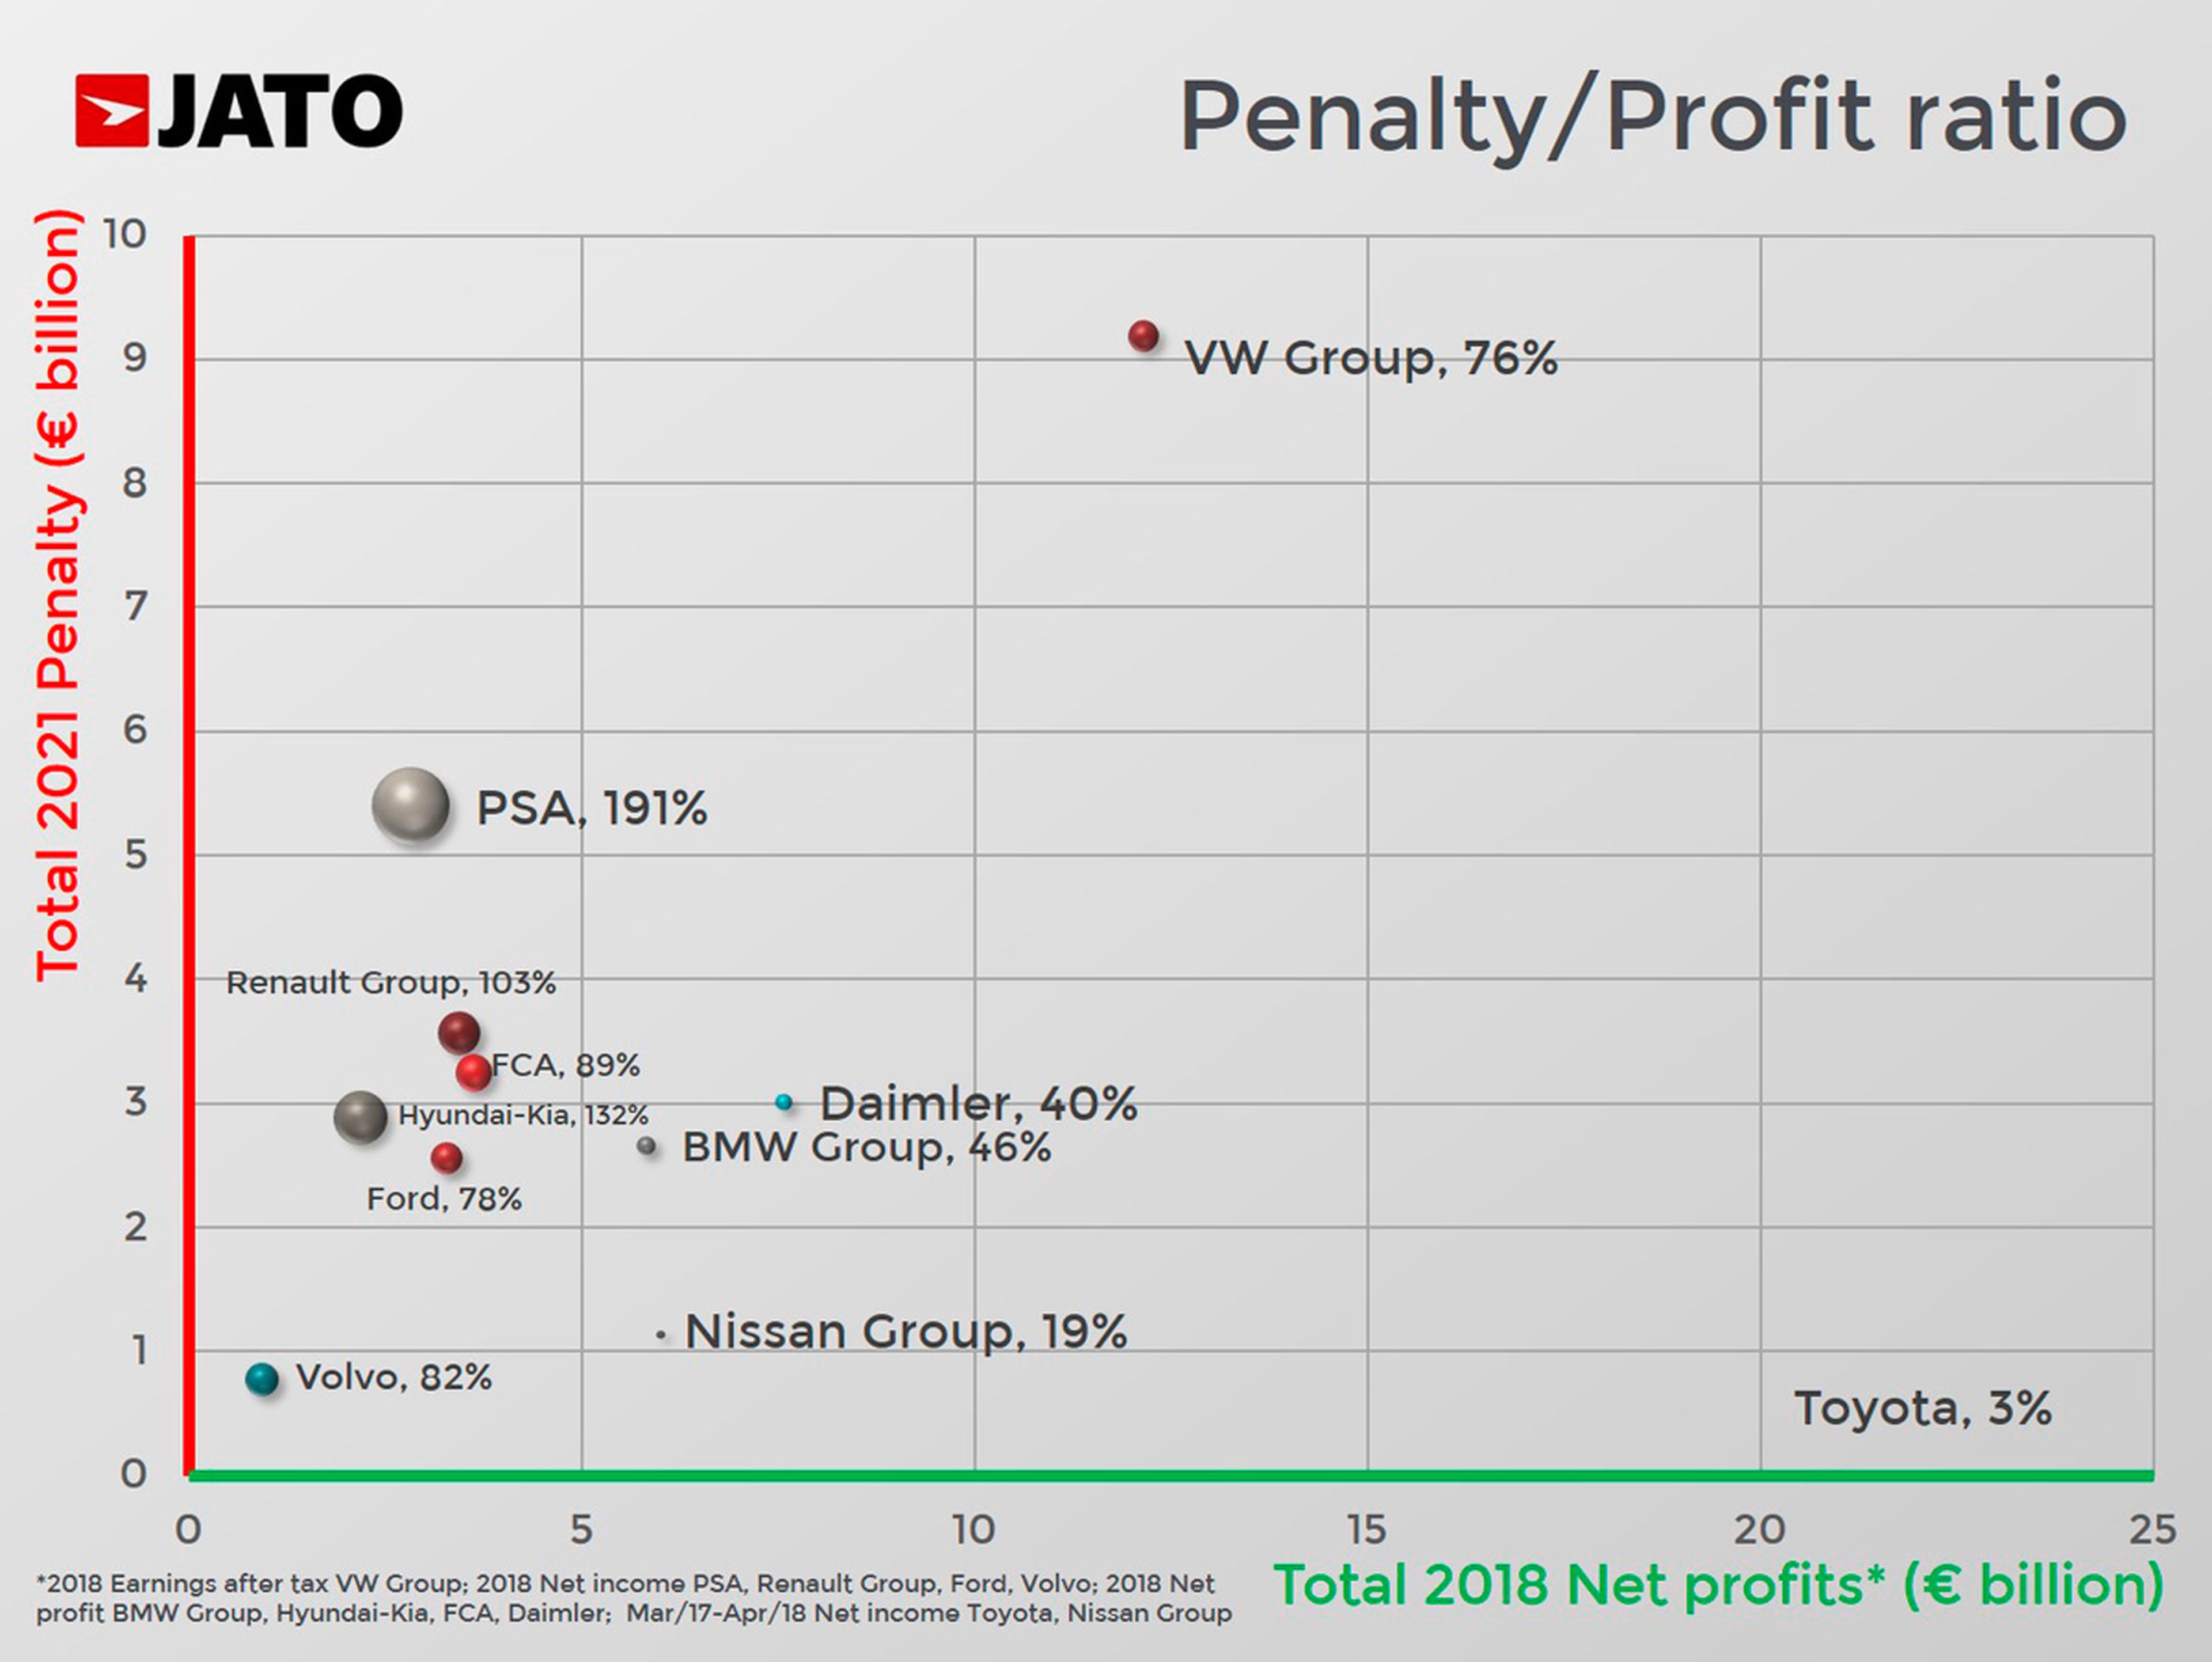 En este gráfico de Jato puede apreciarse la relación de la multa en cada grupo frente a sus beneficios